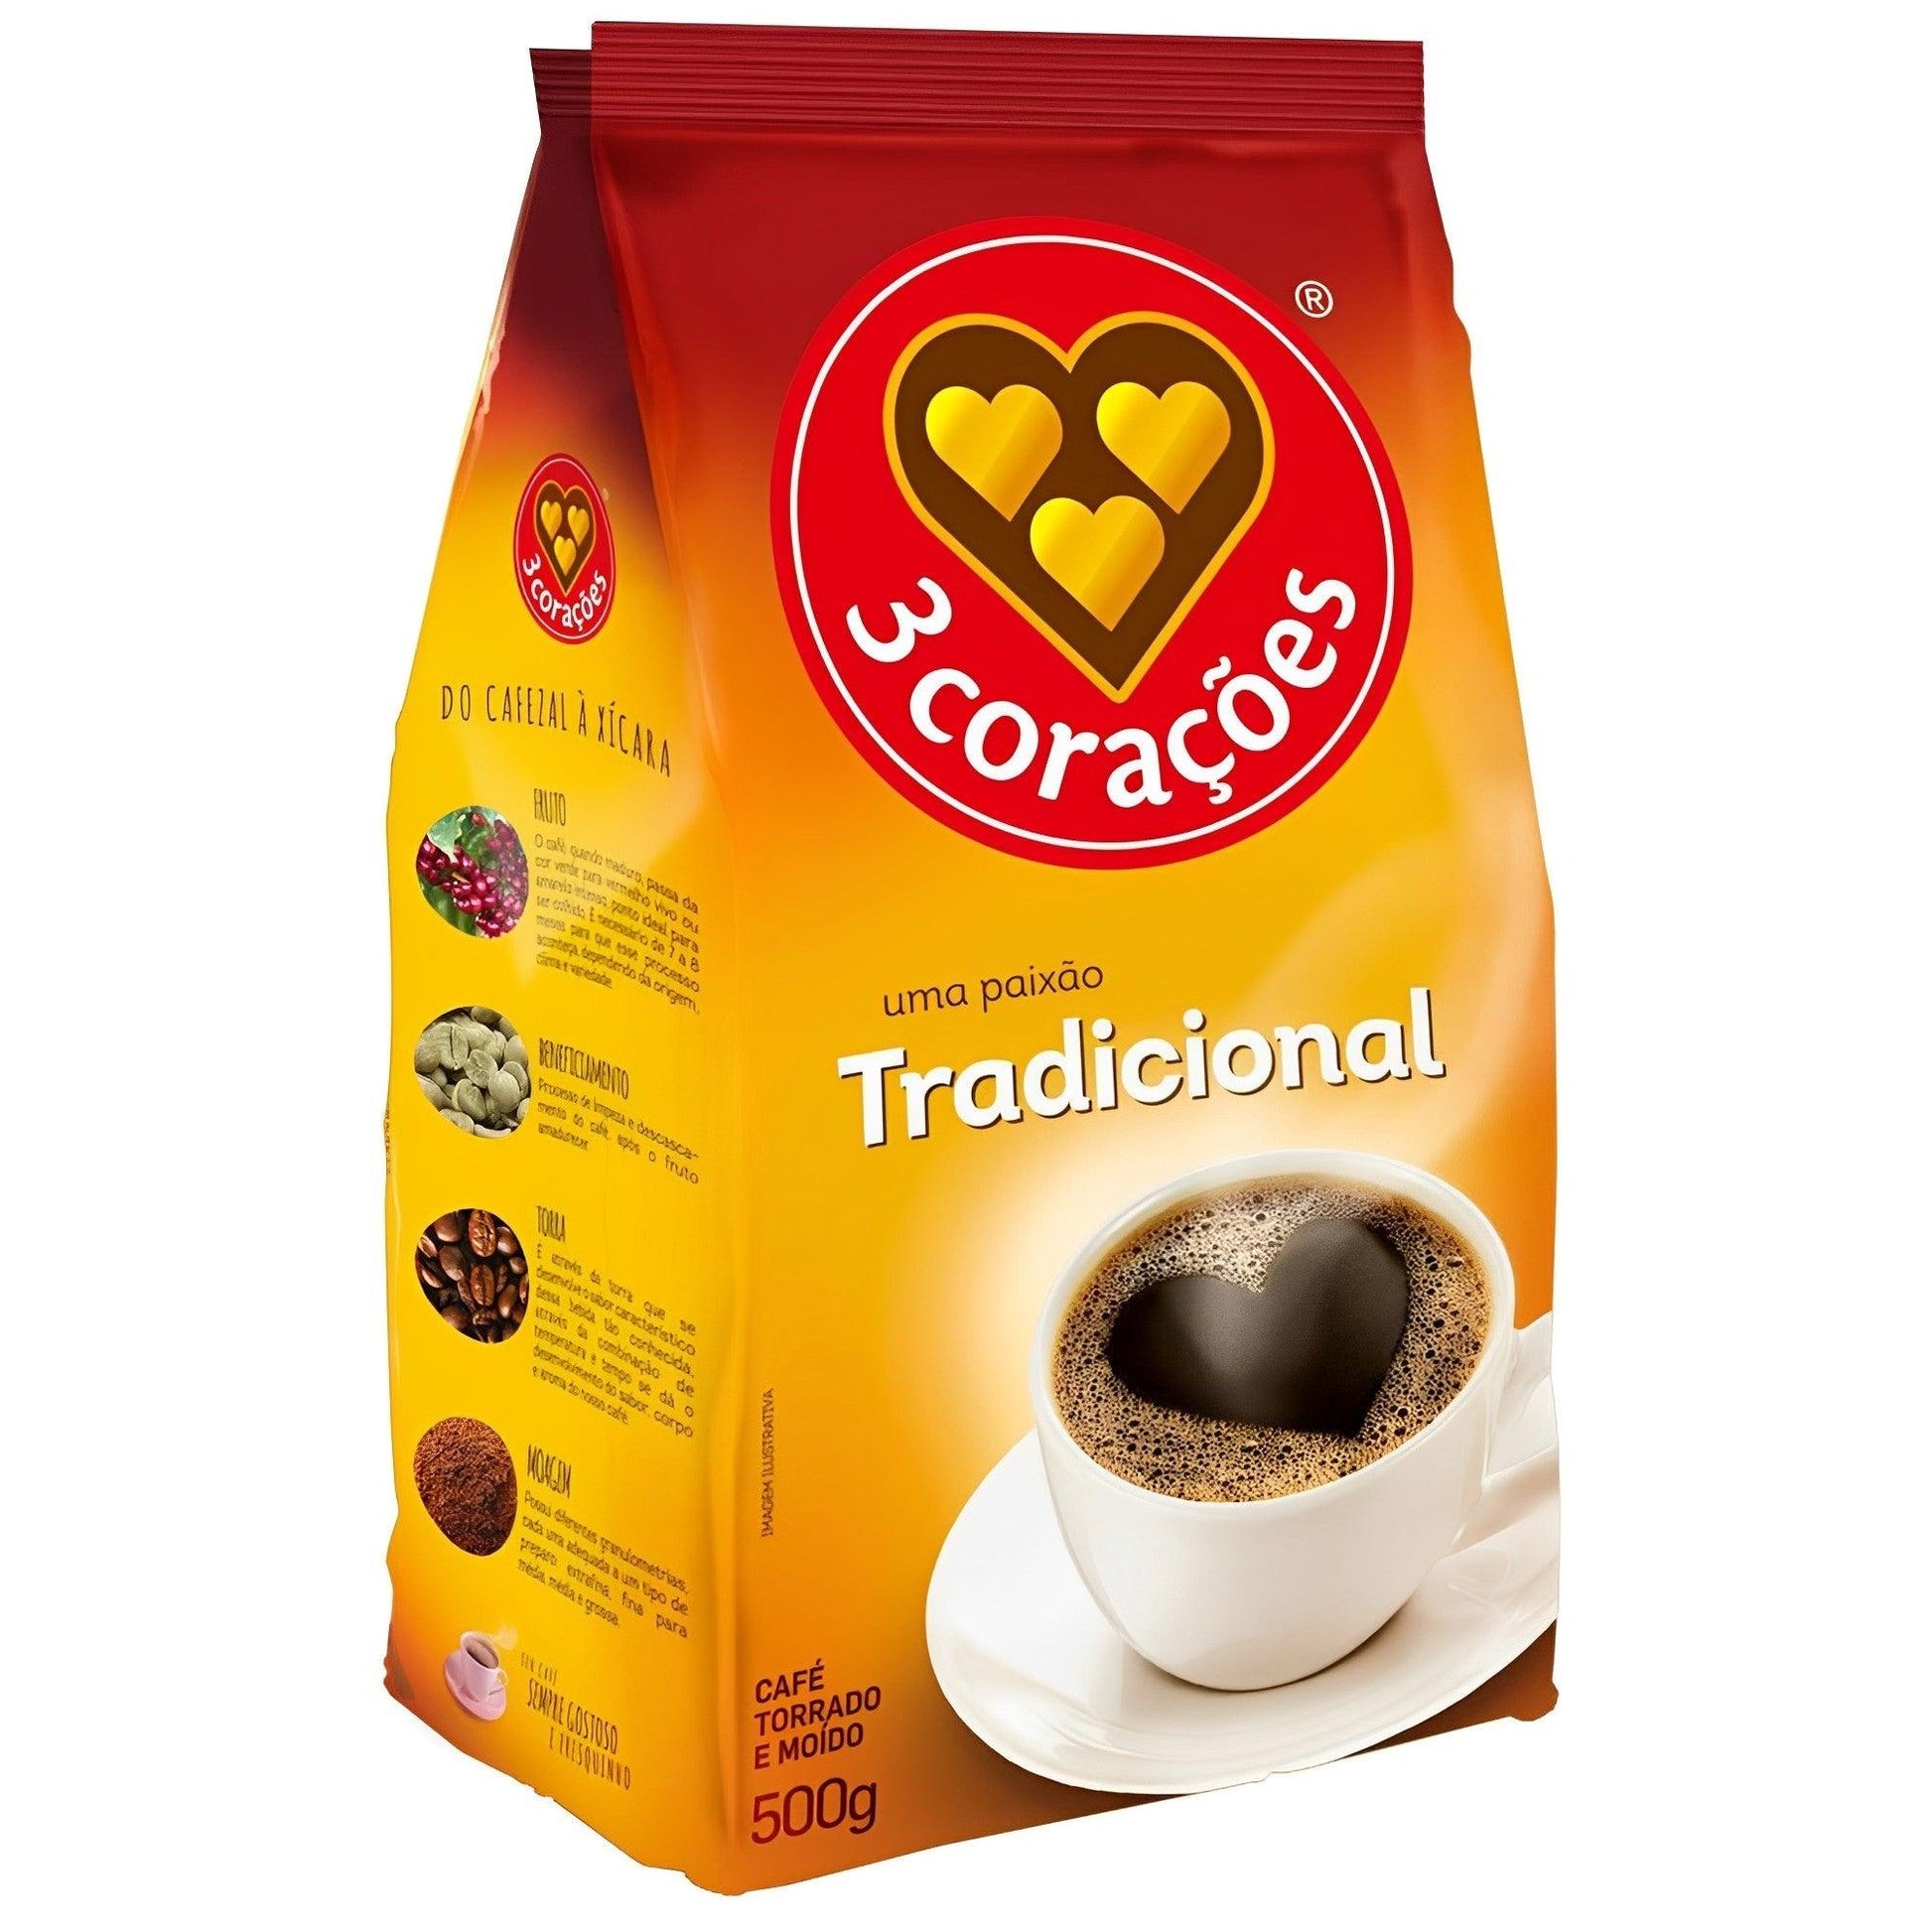 3 Corações Traditional Coffee 17.64 oz. (Pack of 2) - Brazilian Shop